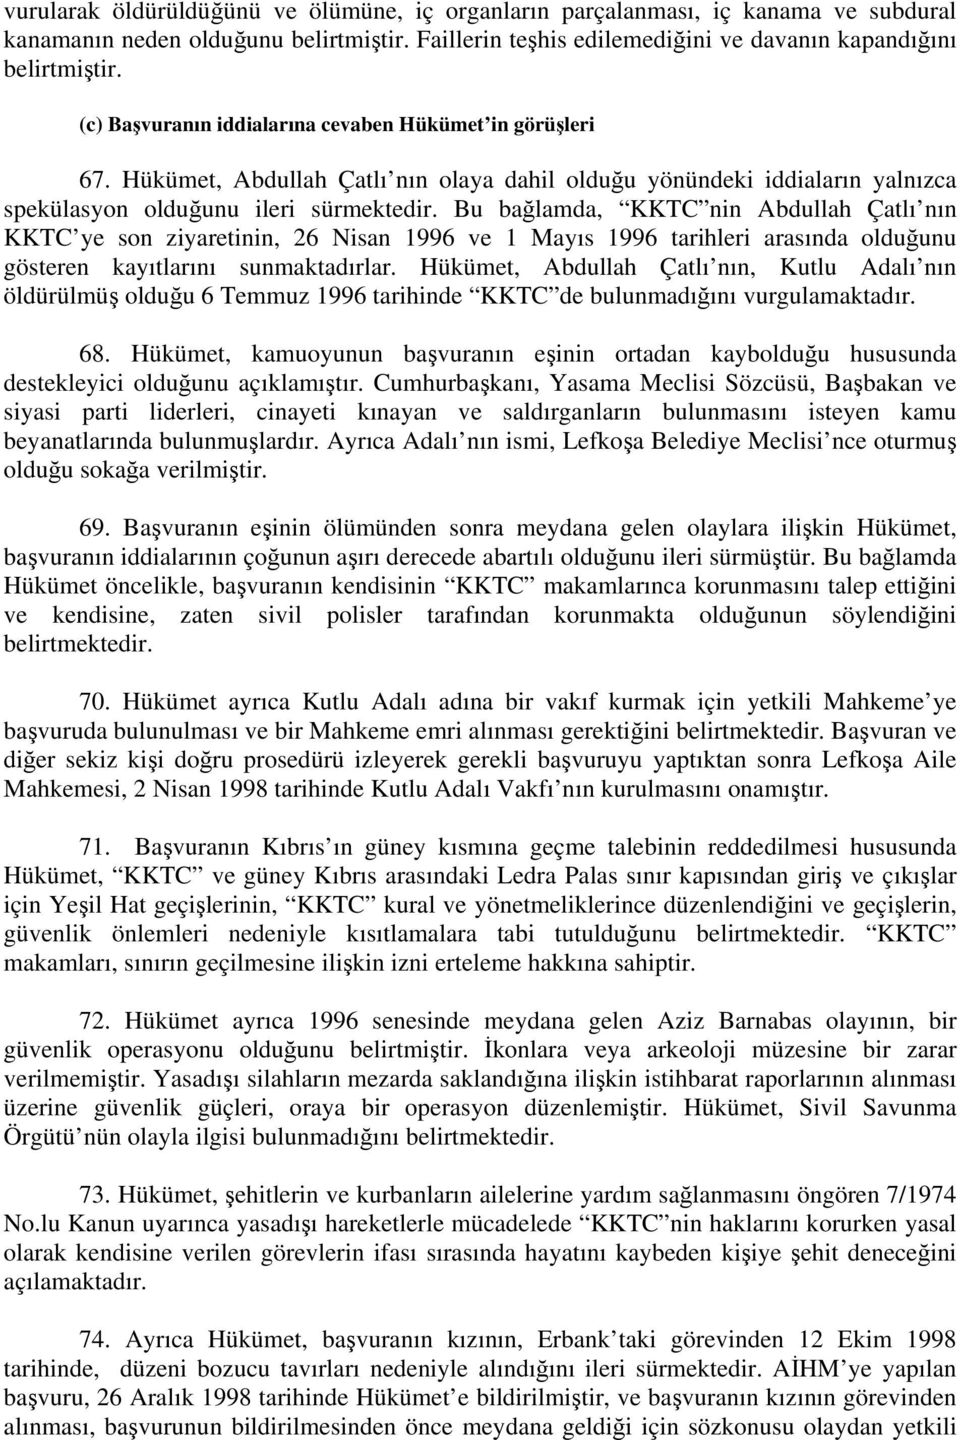 Bu bağlamda, KKTC nin Abdullah Çatlı nın KKTC ye son ziyaretinin, 26 Nisan 1996 ve 1 Mayıs 1996 tarihleri arasında olduğunu gösteren kayıtlarını sunmaktadırlar.